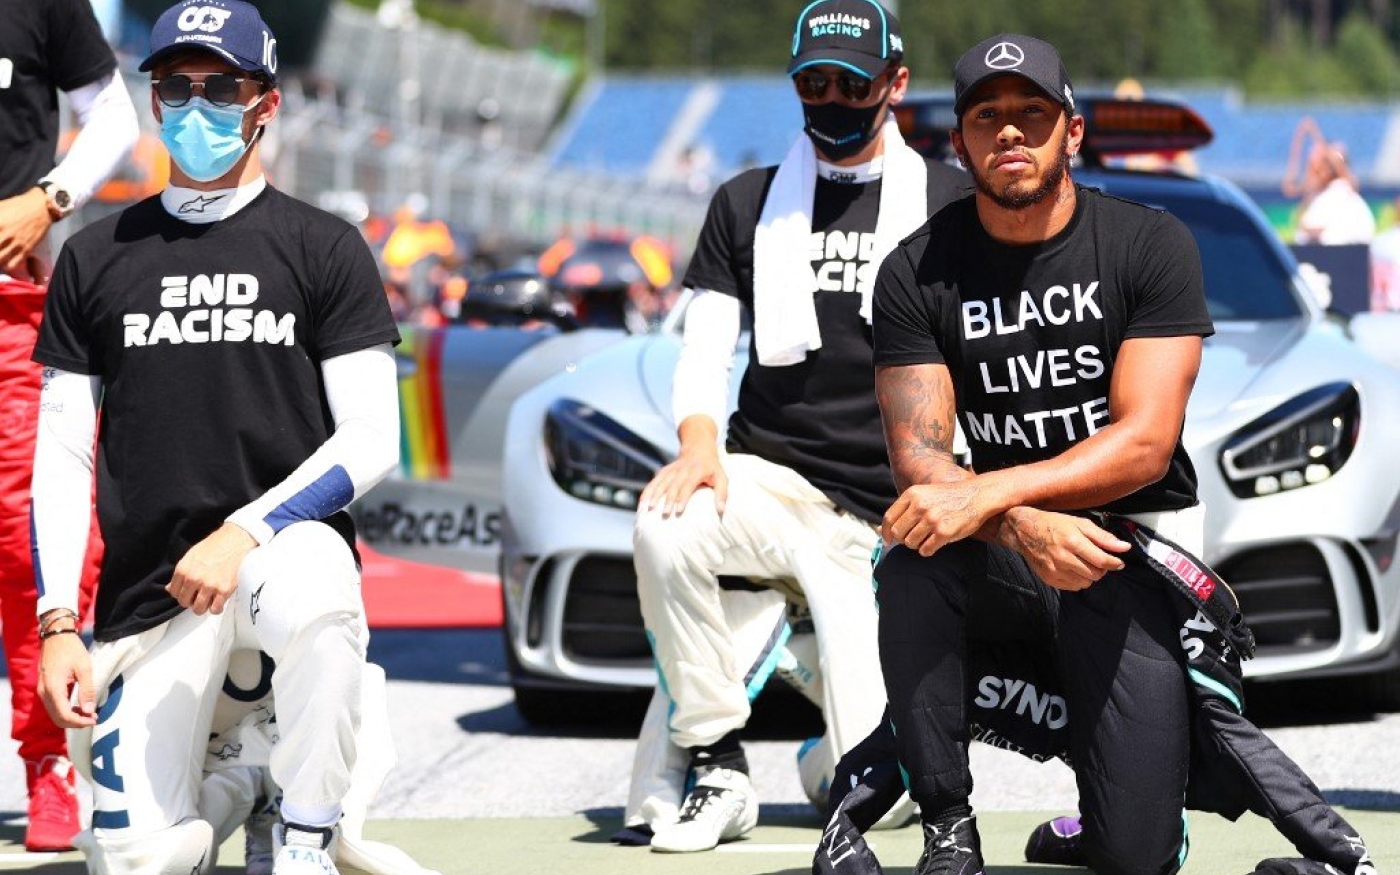 Lewis Hamilton (à droite) et d’autres pilotes de Formule 1 posent le genou à terre avant le Grand Prix d’Autriche, en juillet 2020 (AFP)